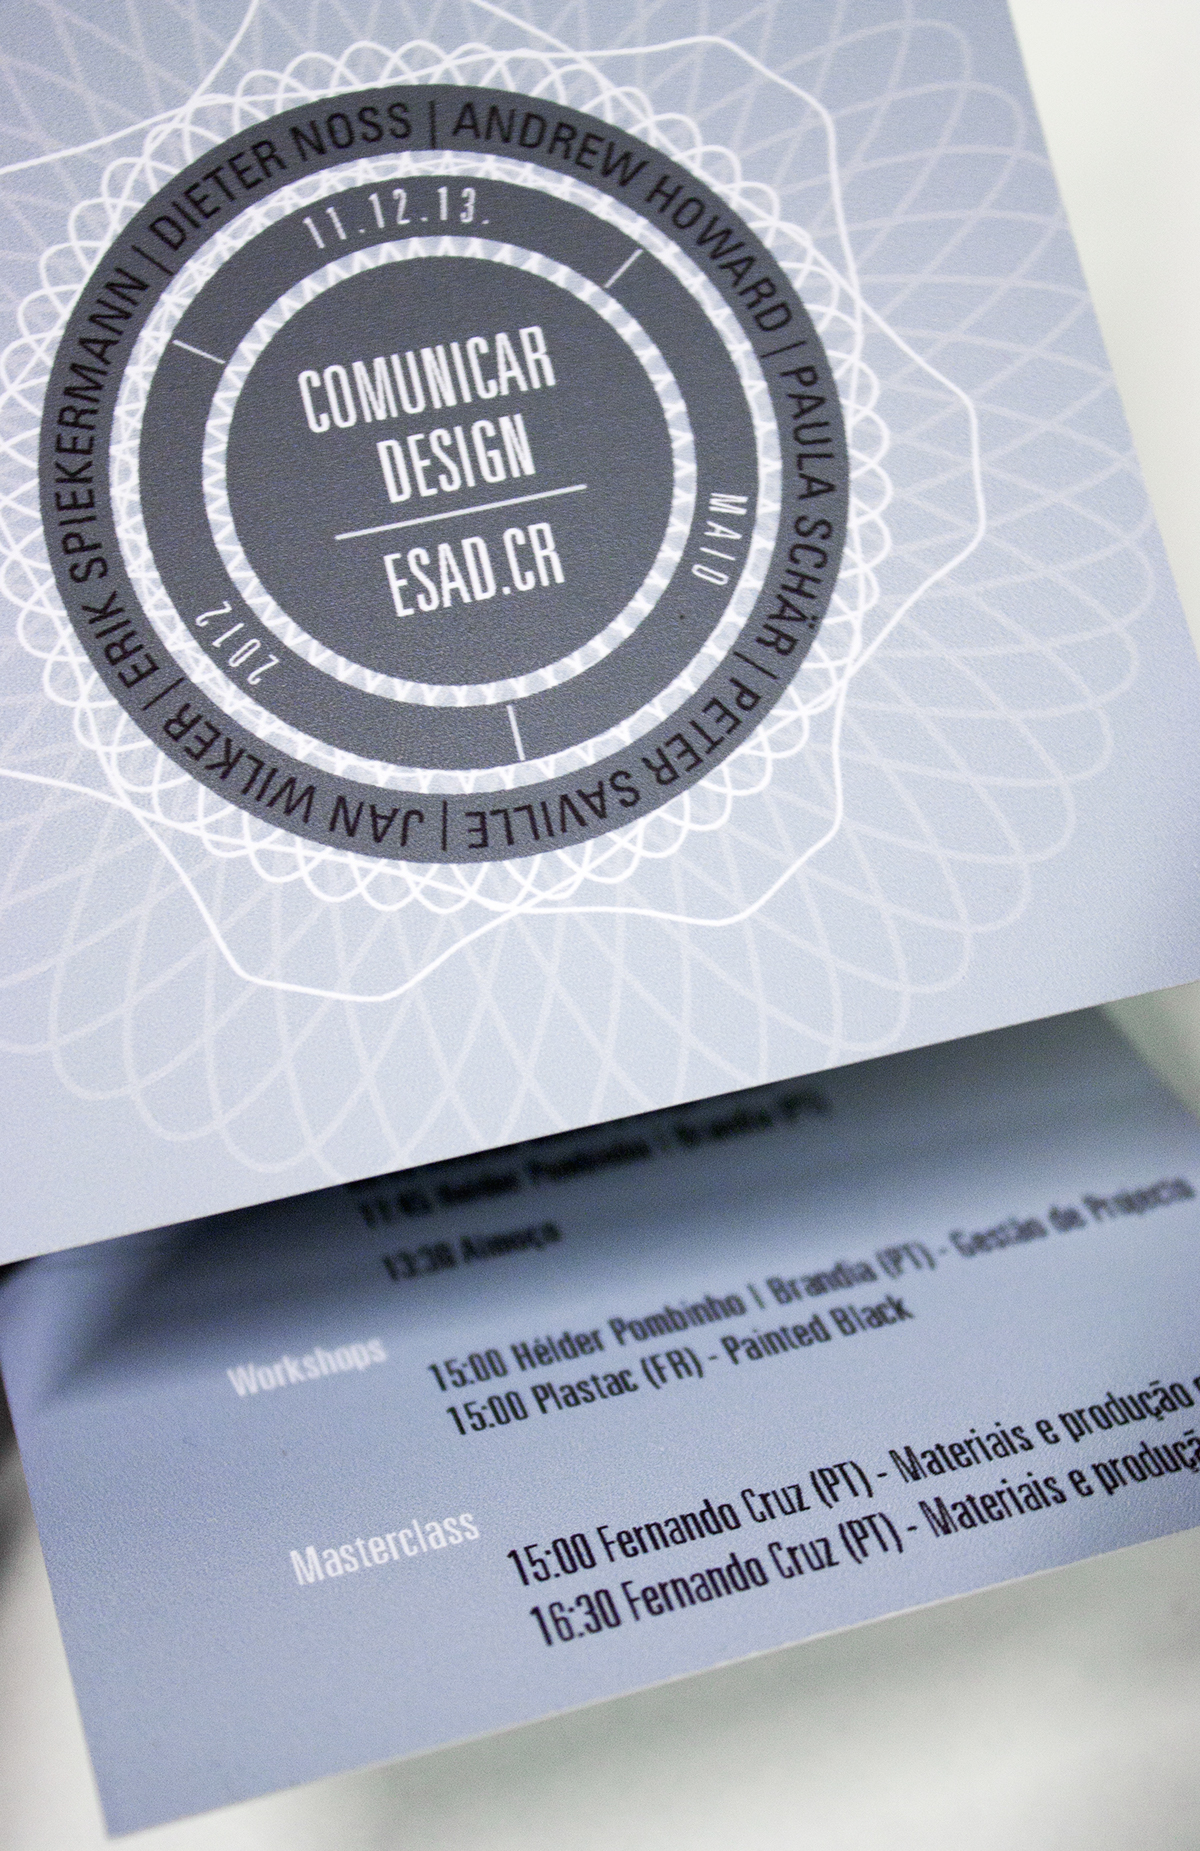 Comunicar Event Kampagne campaign Spirograph Spirografen Event Design Portugal ESAD comunicar design